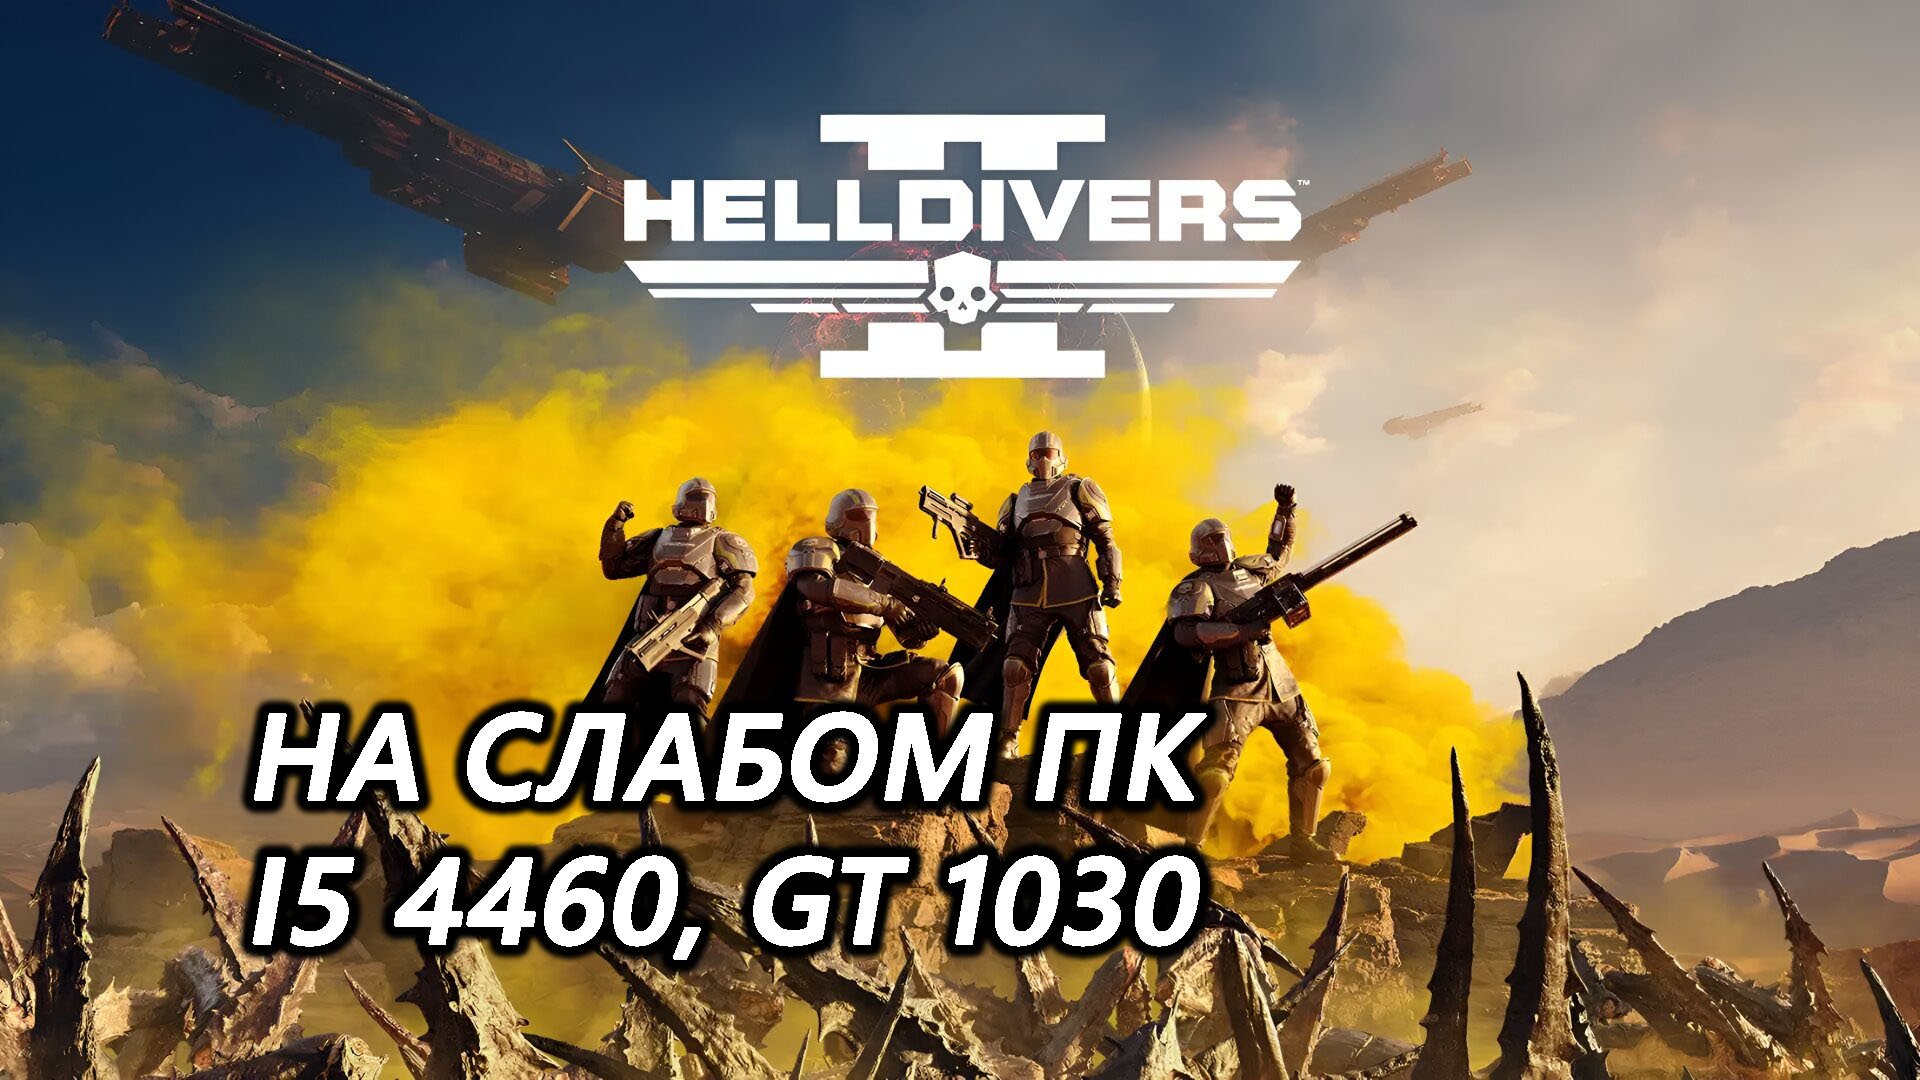 Helldivers 2 на слабом пк (GT 1030)